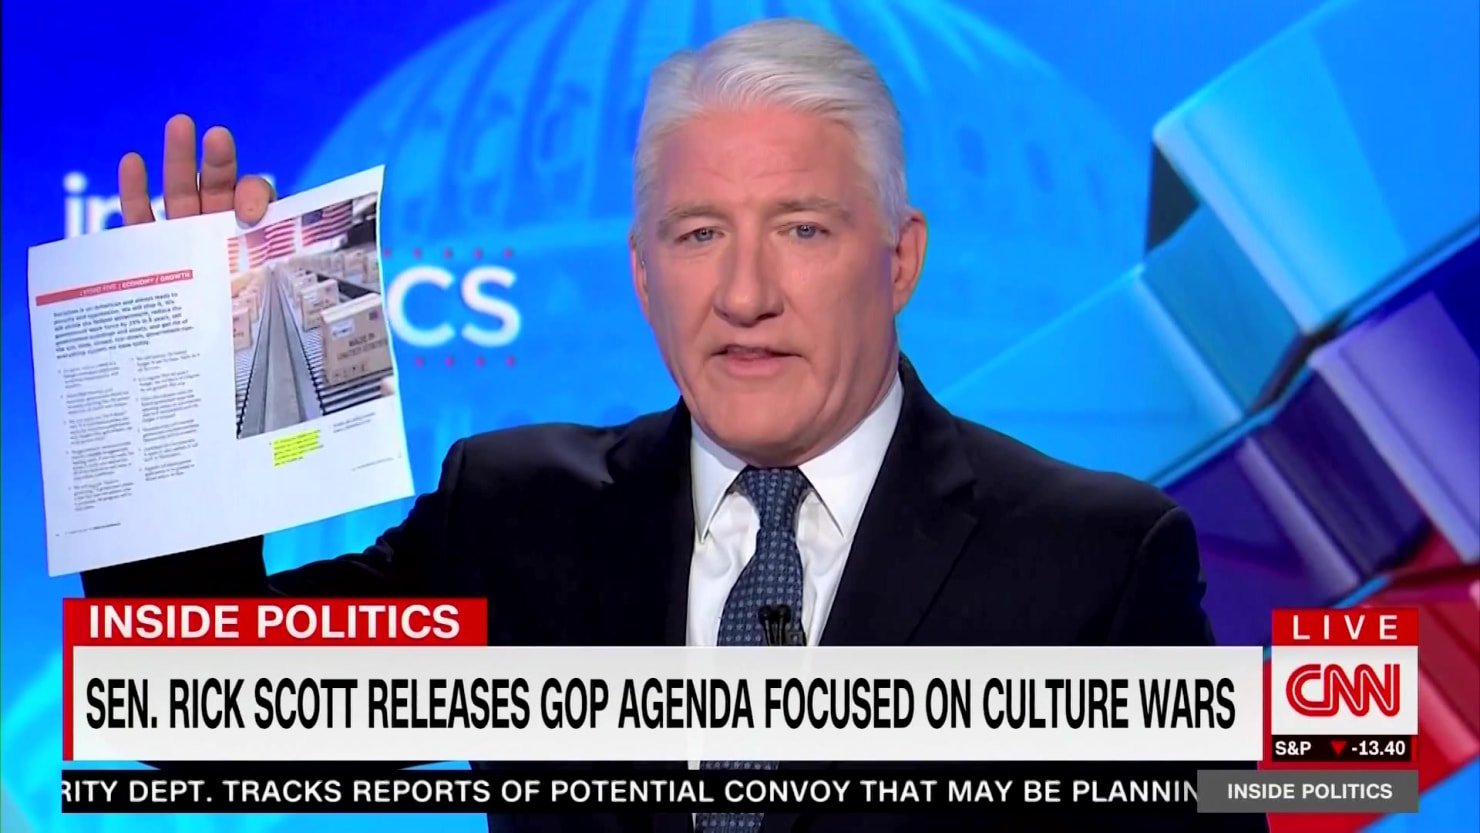 ‘La lectura es fundamental’: el presentador de CNN se burla de Rick Scott por mentir sobre su propio plan